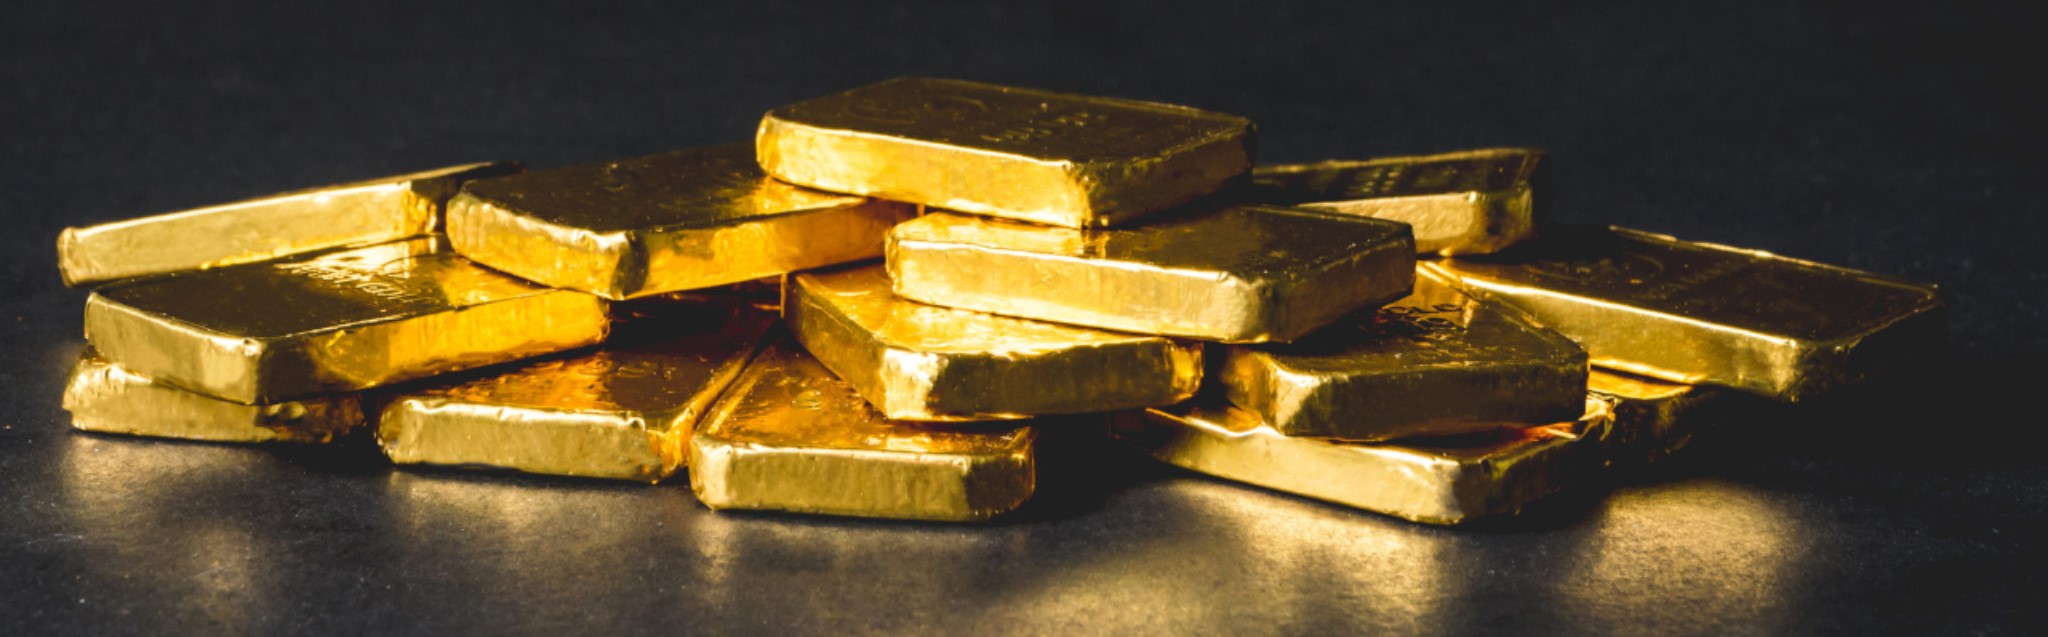 Биржа Bitfinex добавила опцию маржинальной торговли для «золотого стейблкоина» Tether